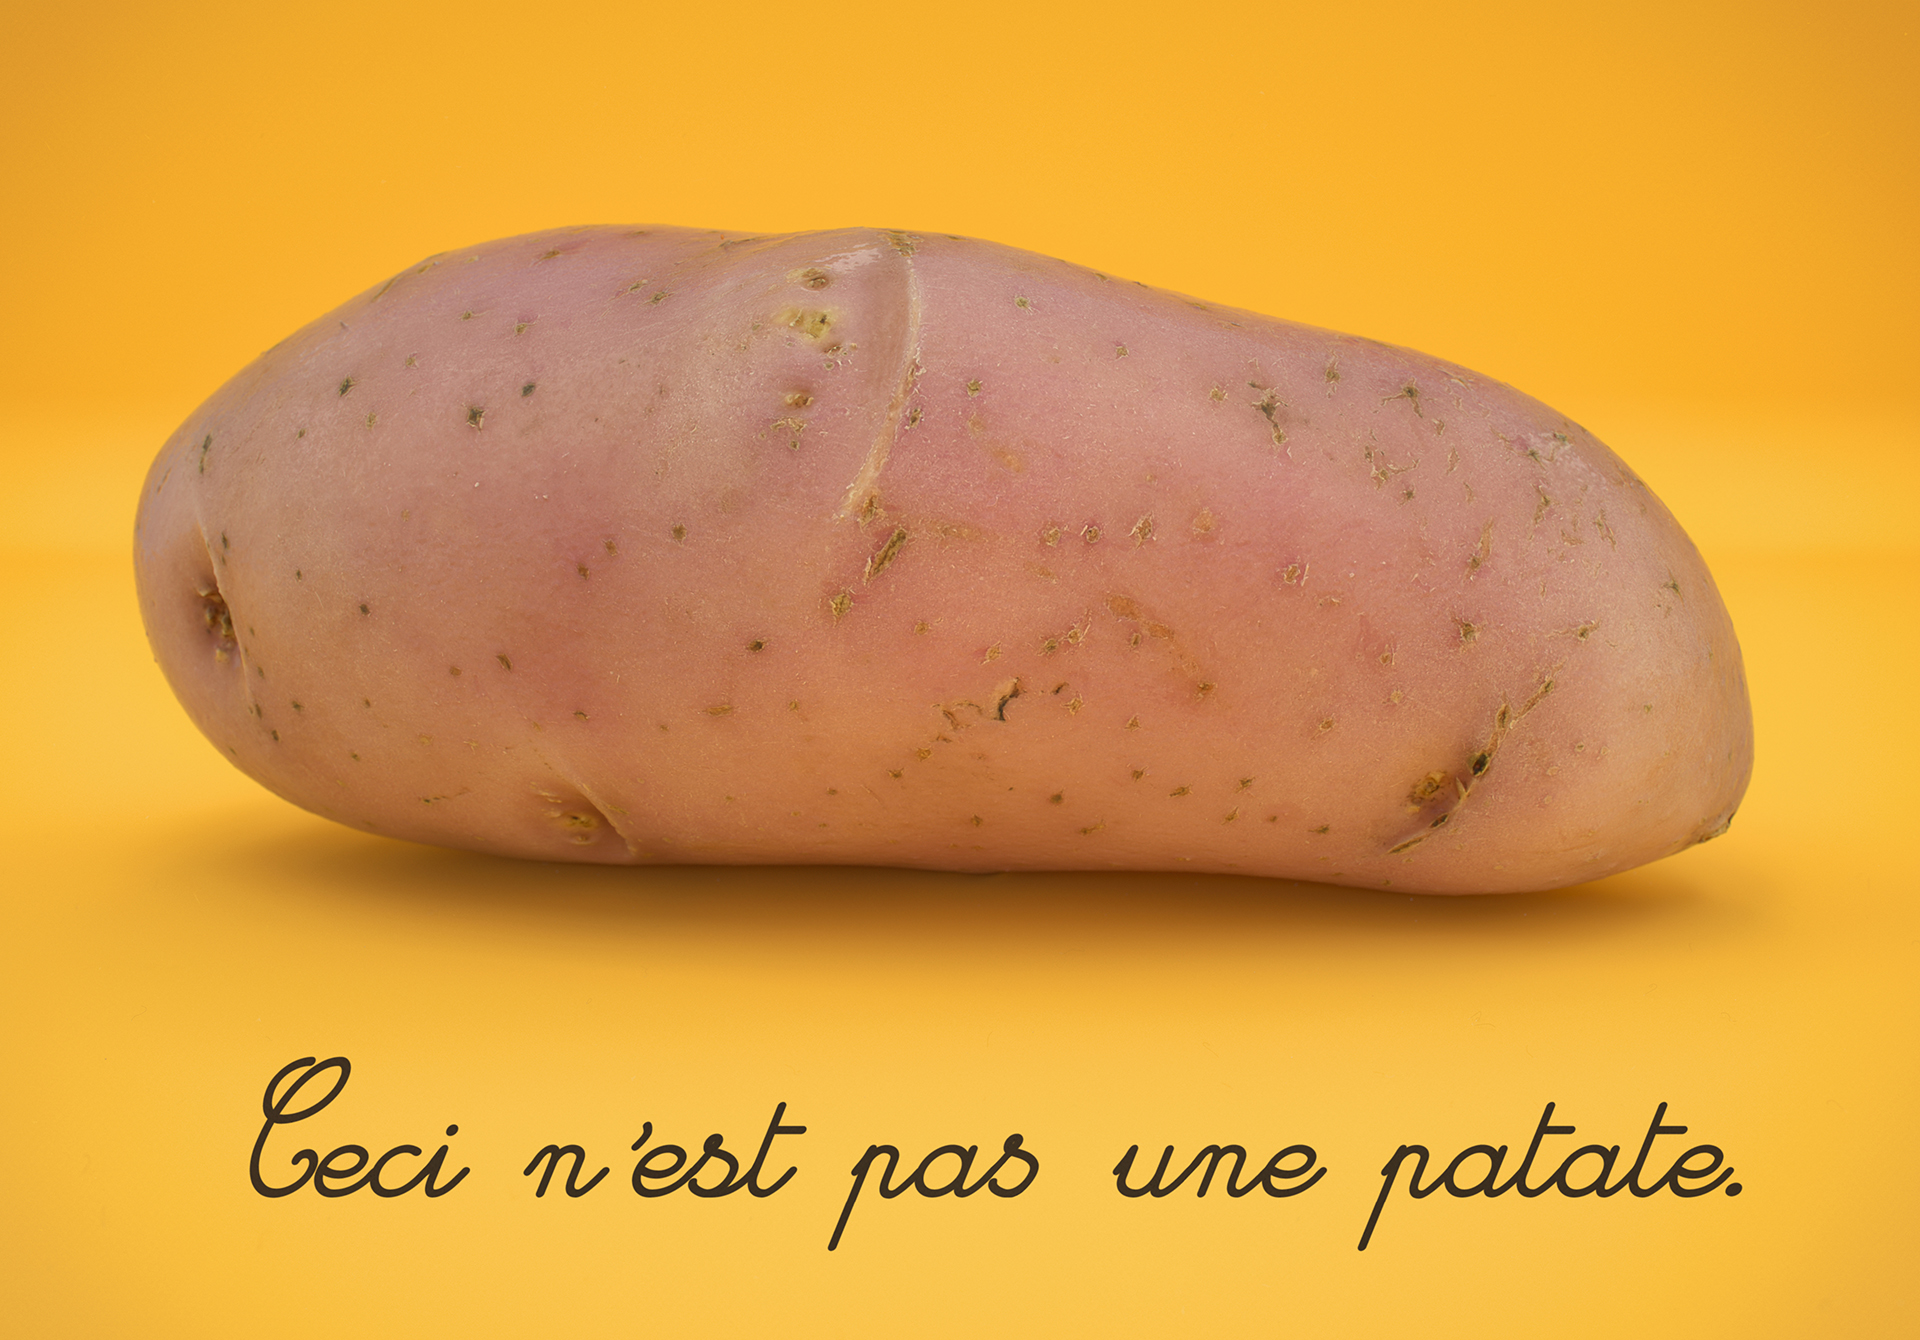 Ceci n’est pas une patate.